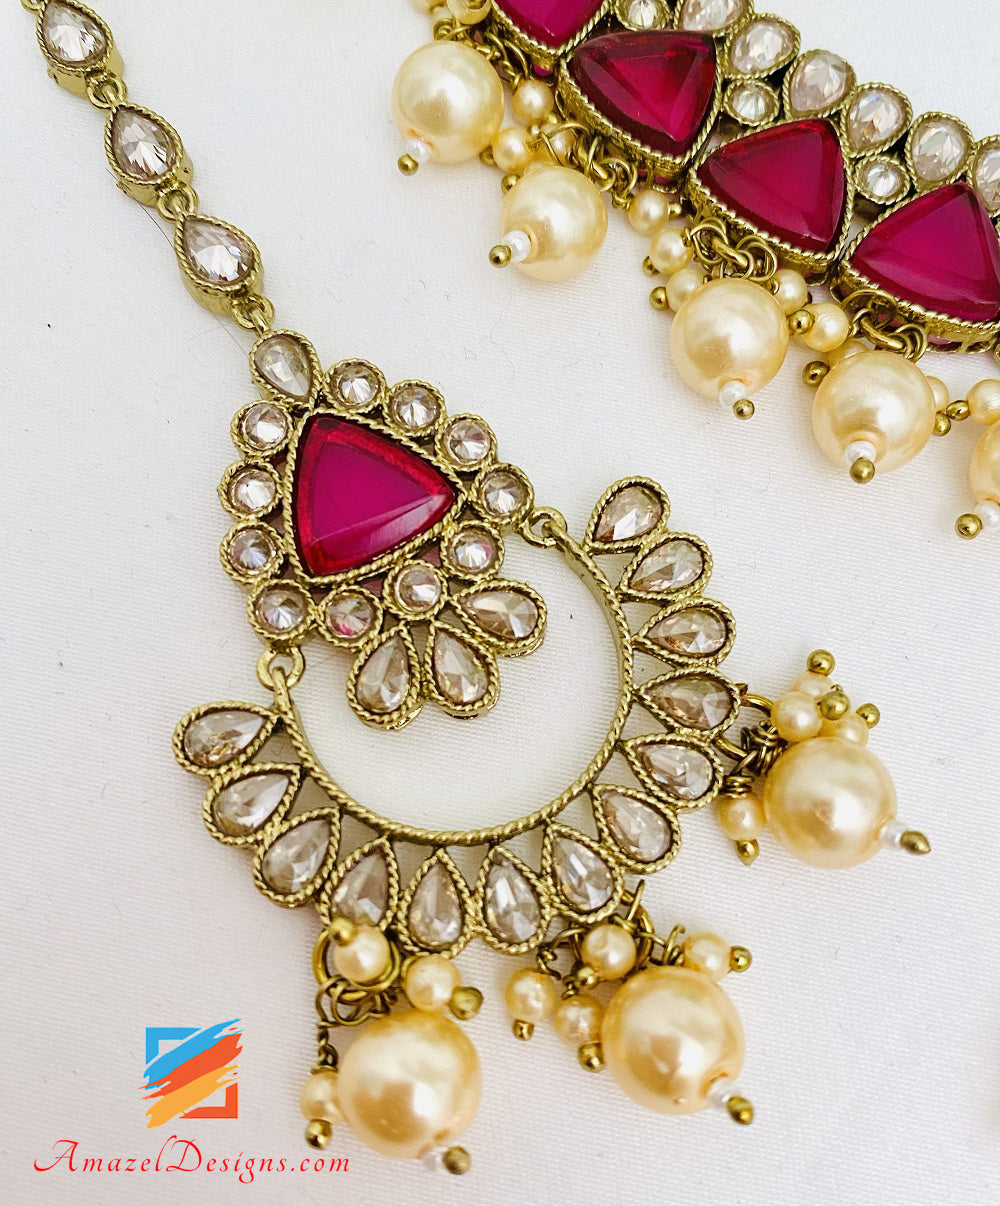 Monalisa Polki Hot Pink Magenta Necklace Earrings Tikka Set